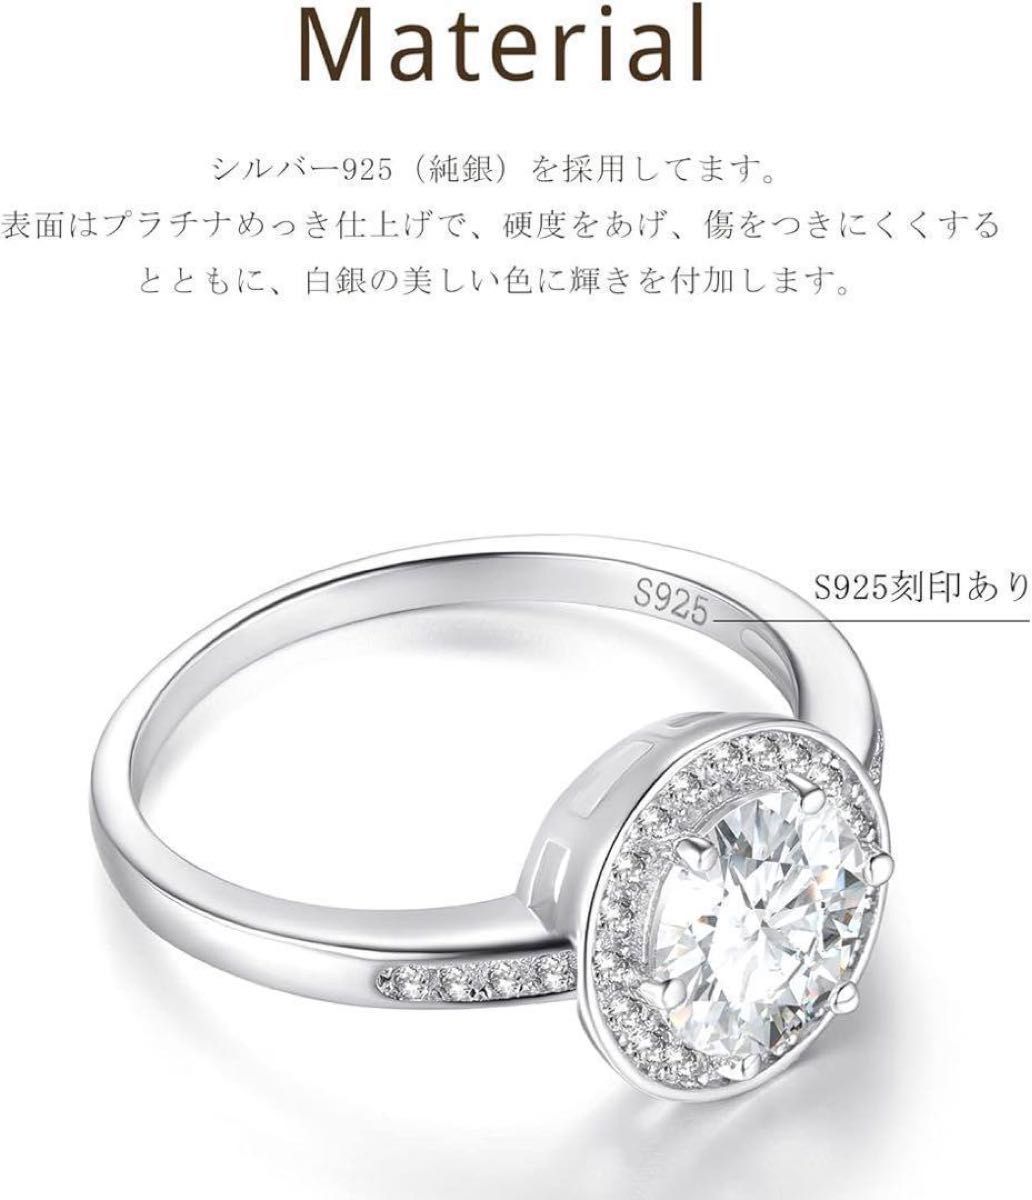 レディース リング 9号 婚約指輪 1カラット シルバー925 専用ケース付 指輪 超大粒 上品 ギフト 記念日 世界一豪華 極美